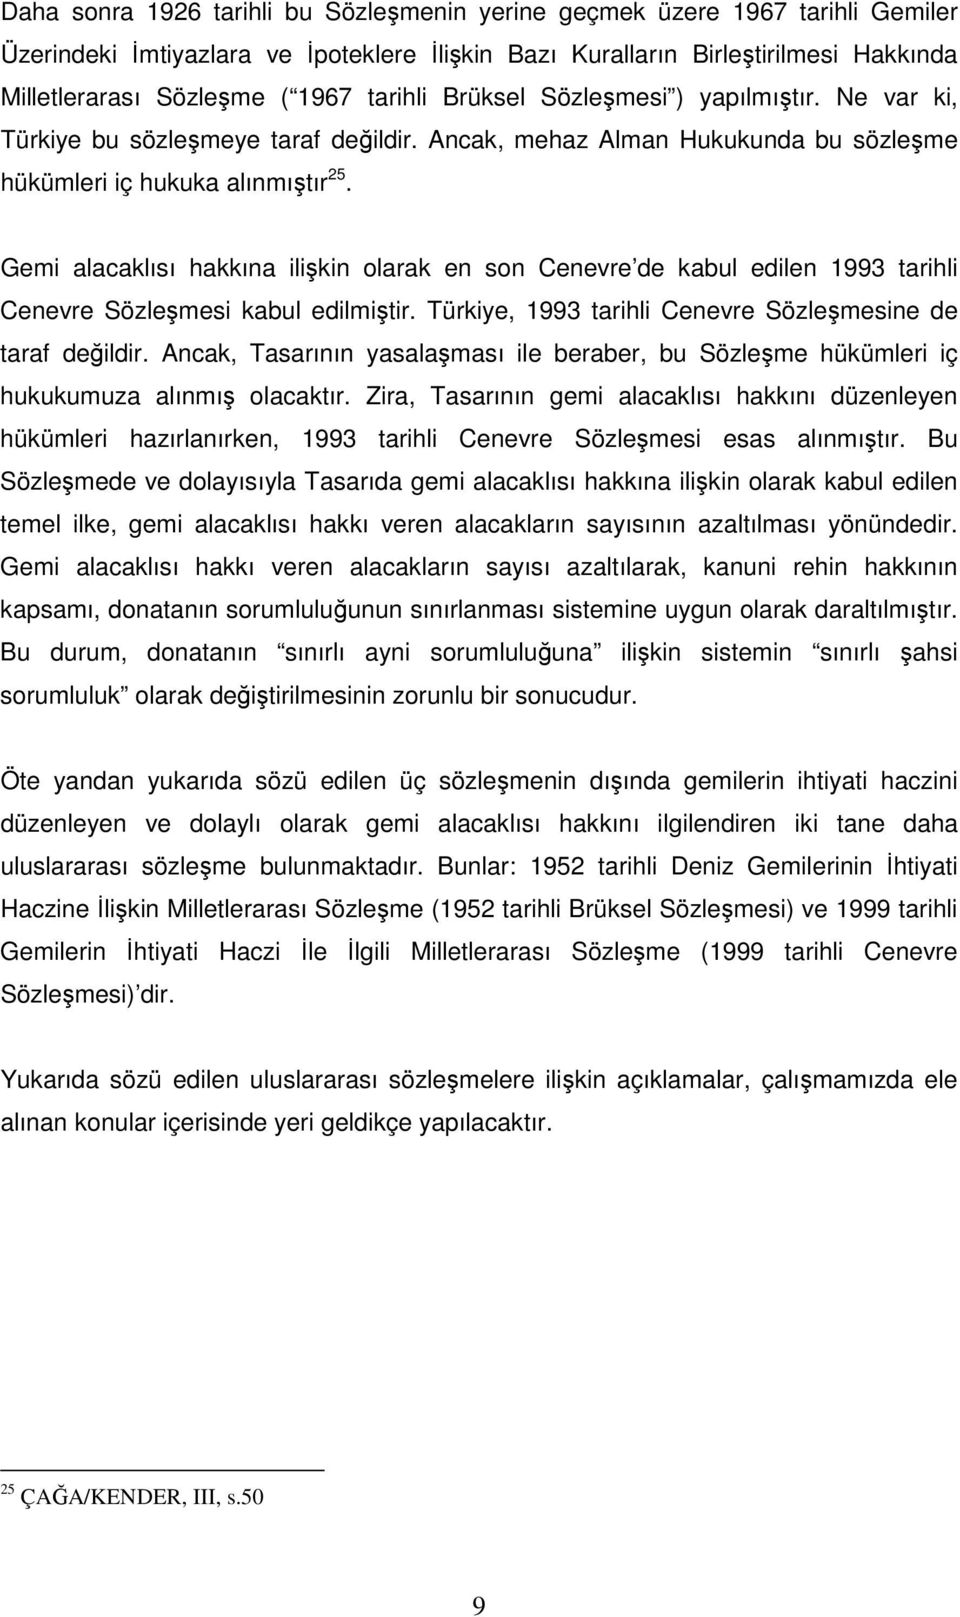 Gemi alacaklısı hakkına ilişkin olarak en son Cenevre de kabul edilen 1993 tarihli Cenevre Sözleşmesi kabul edilmiştir. Türkiye, 1993 tarihli Cenevre Sözleşmesine de taraf değildir.